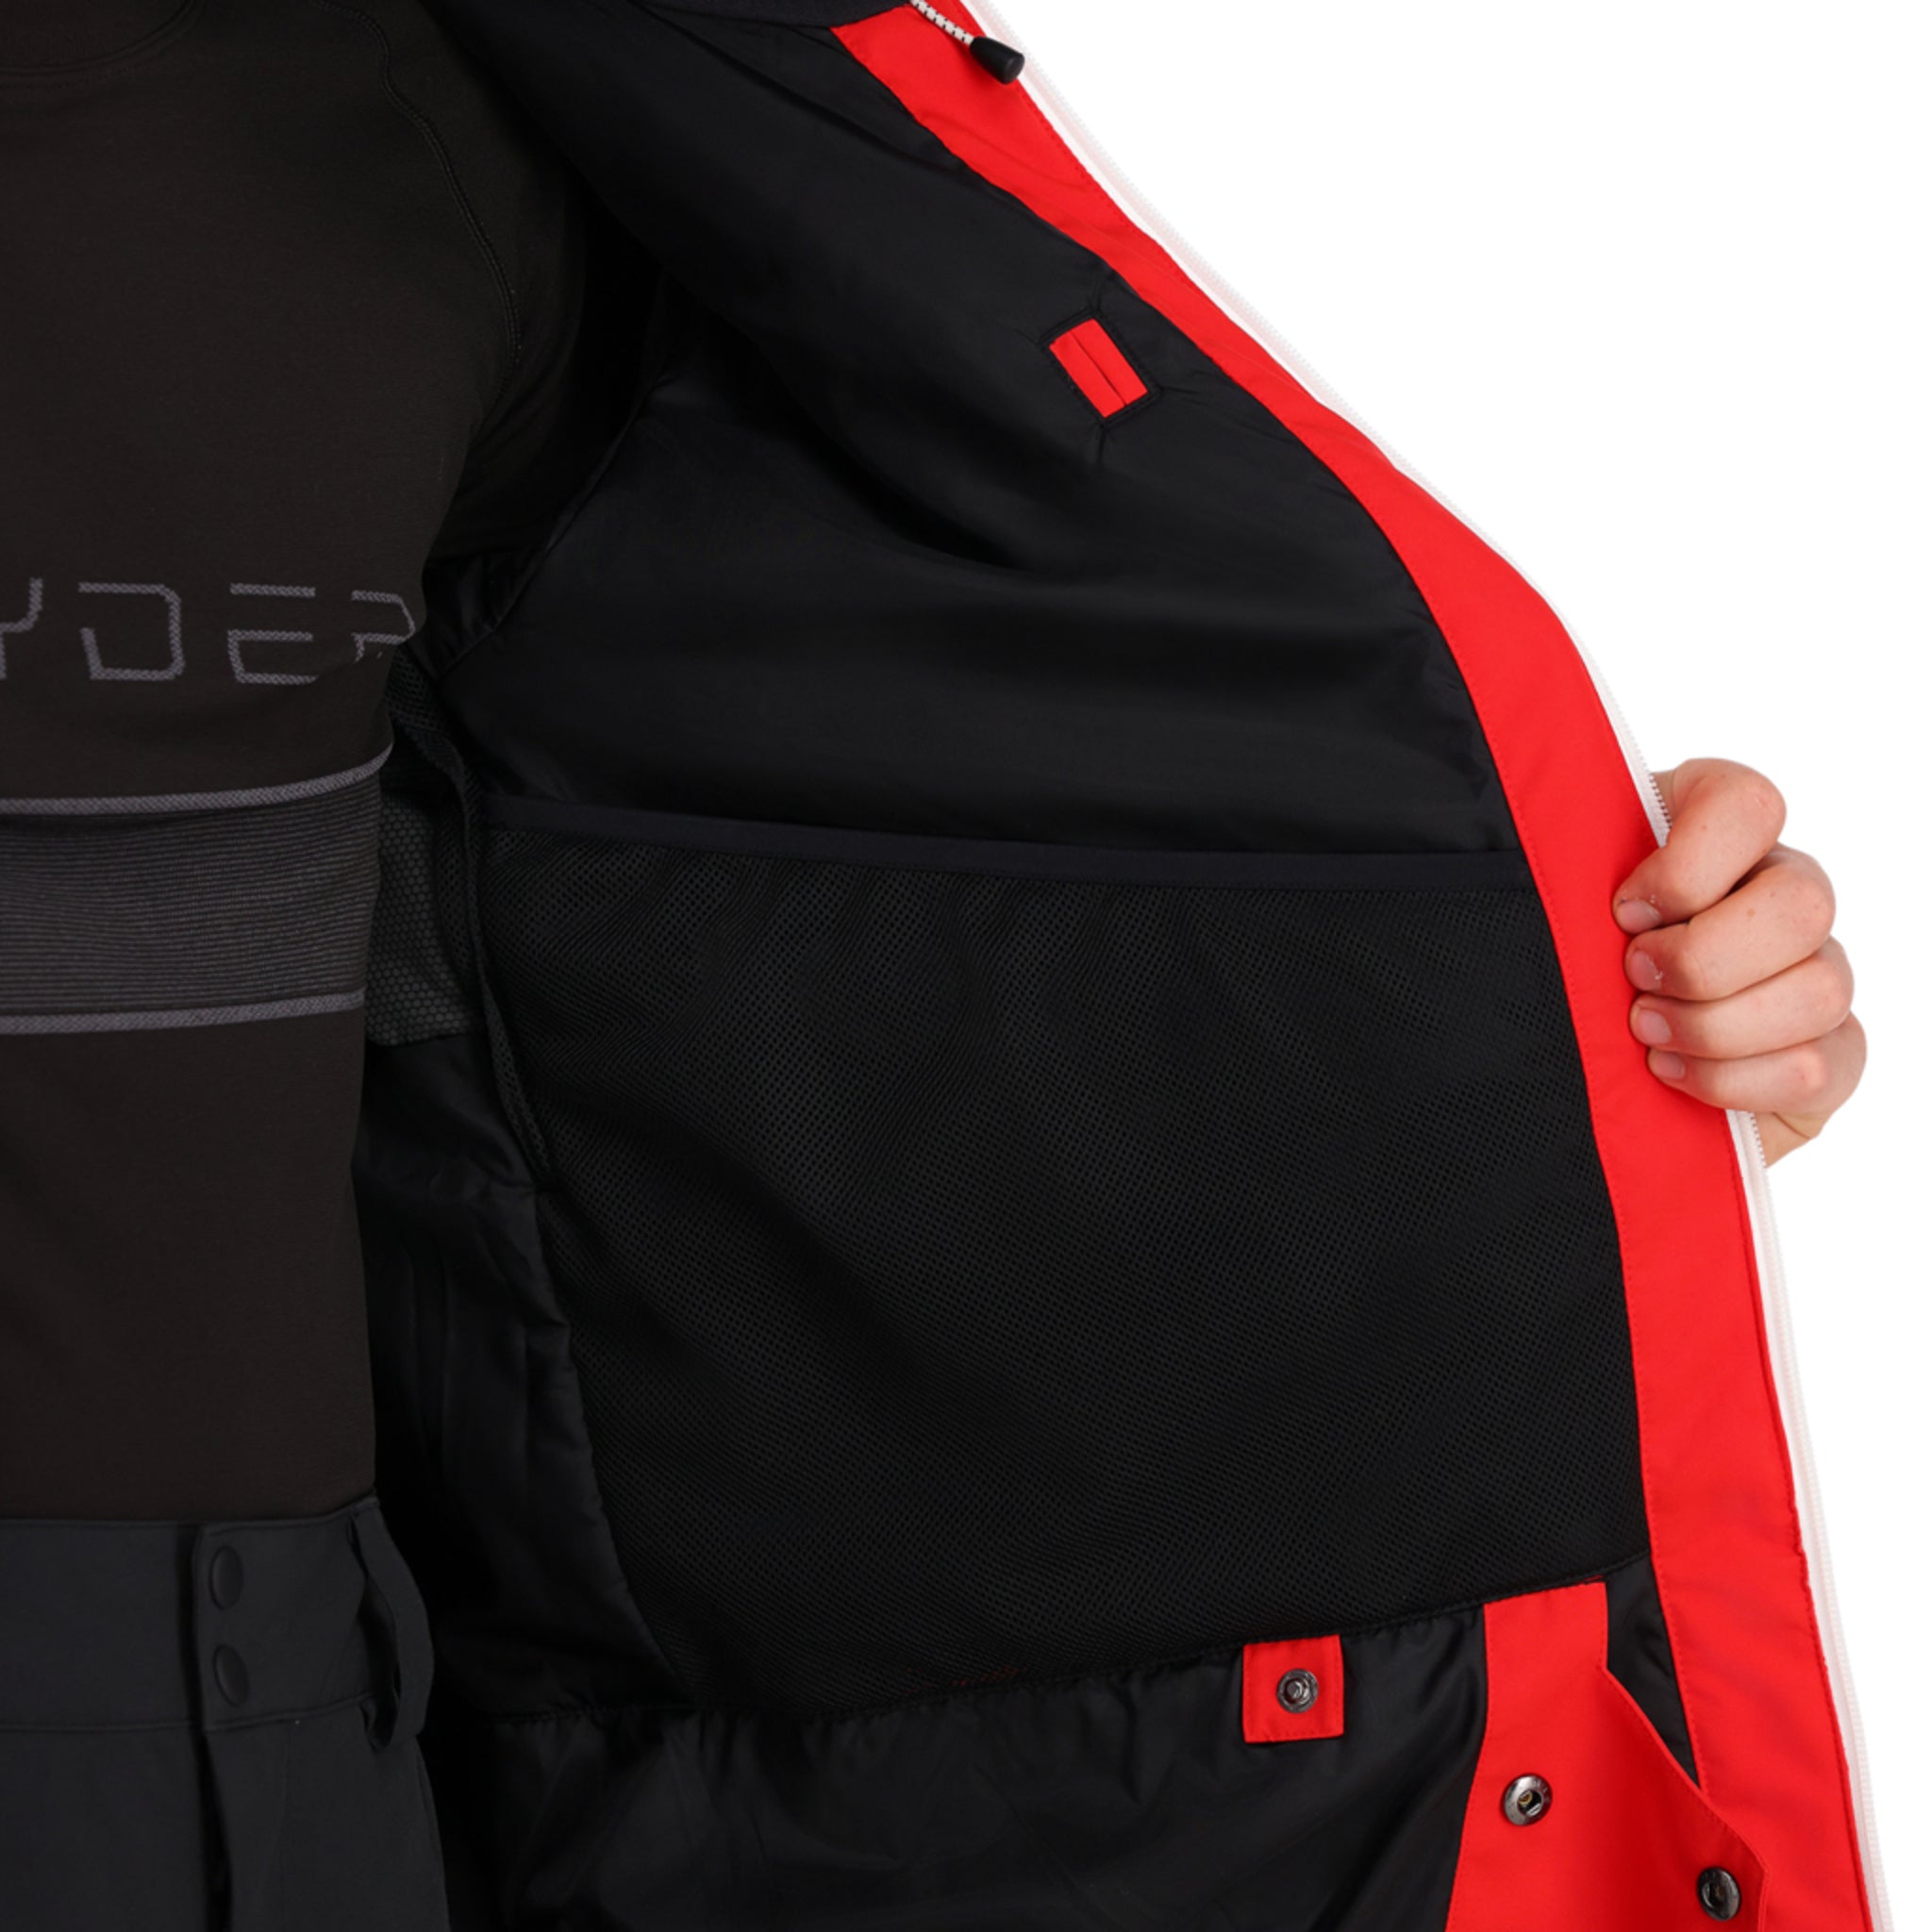 Spyder Field Ski Jacket